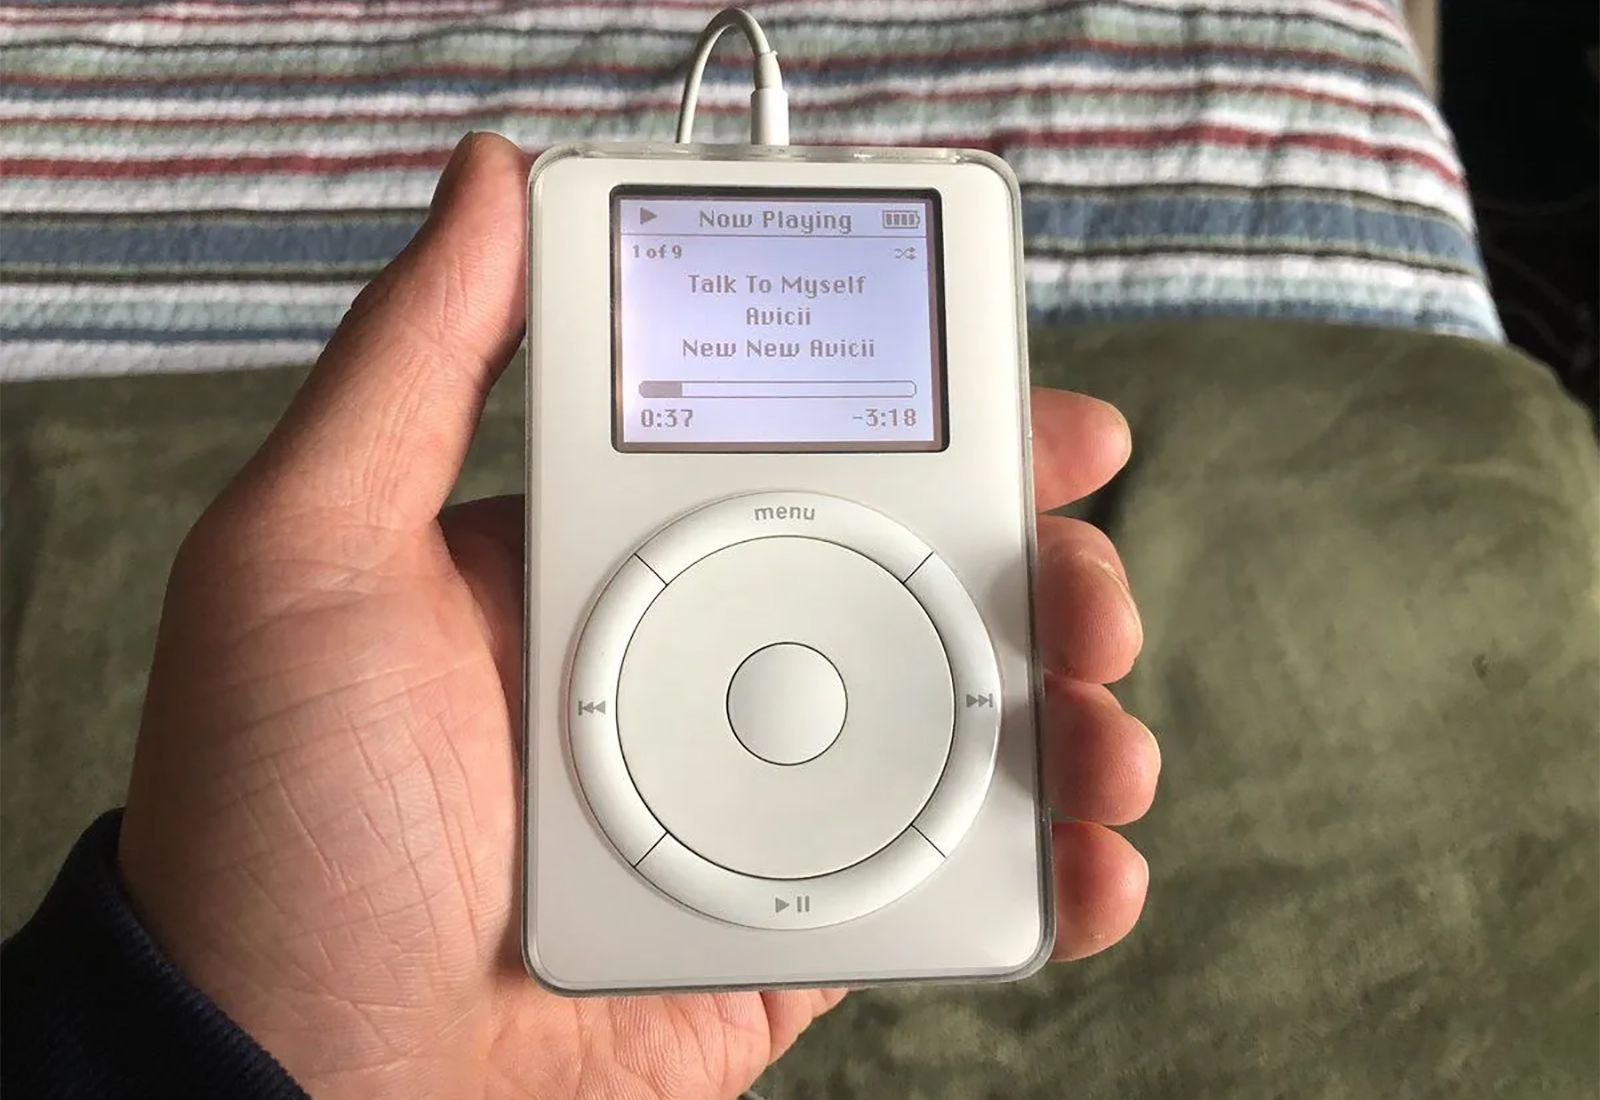 Этот день в истории Apple: представлен iPod первого поколения с библиотекой в 1000 песен